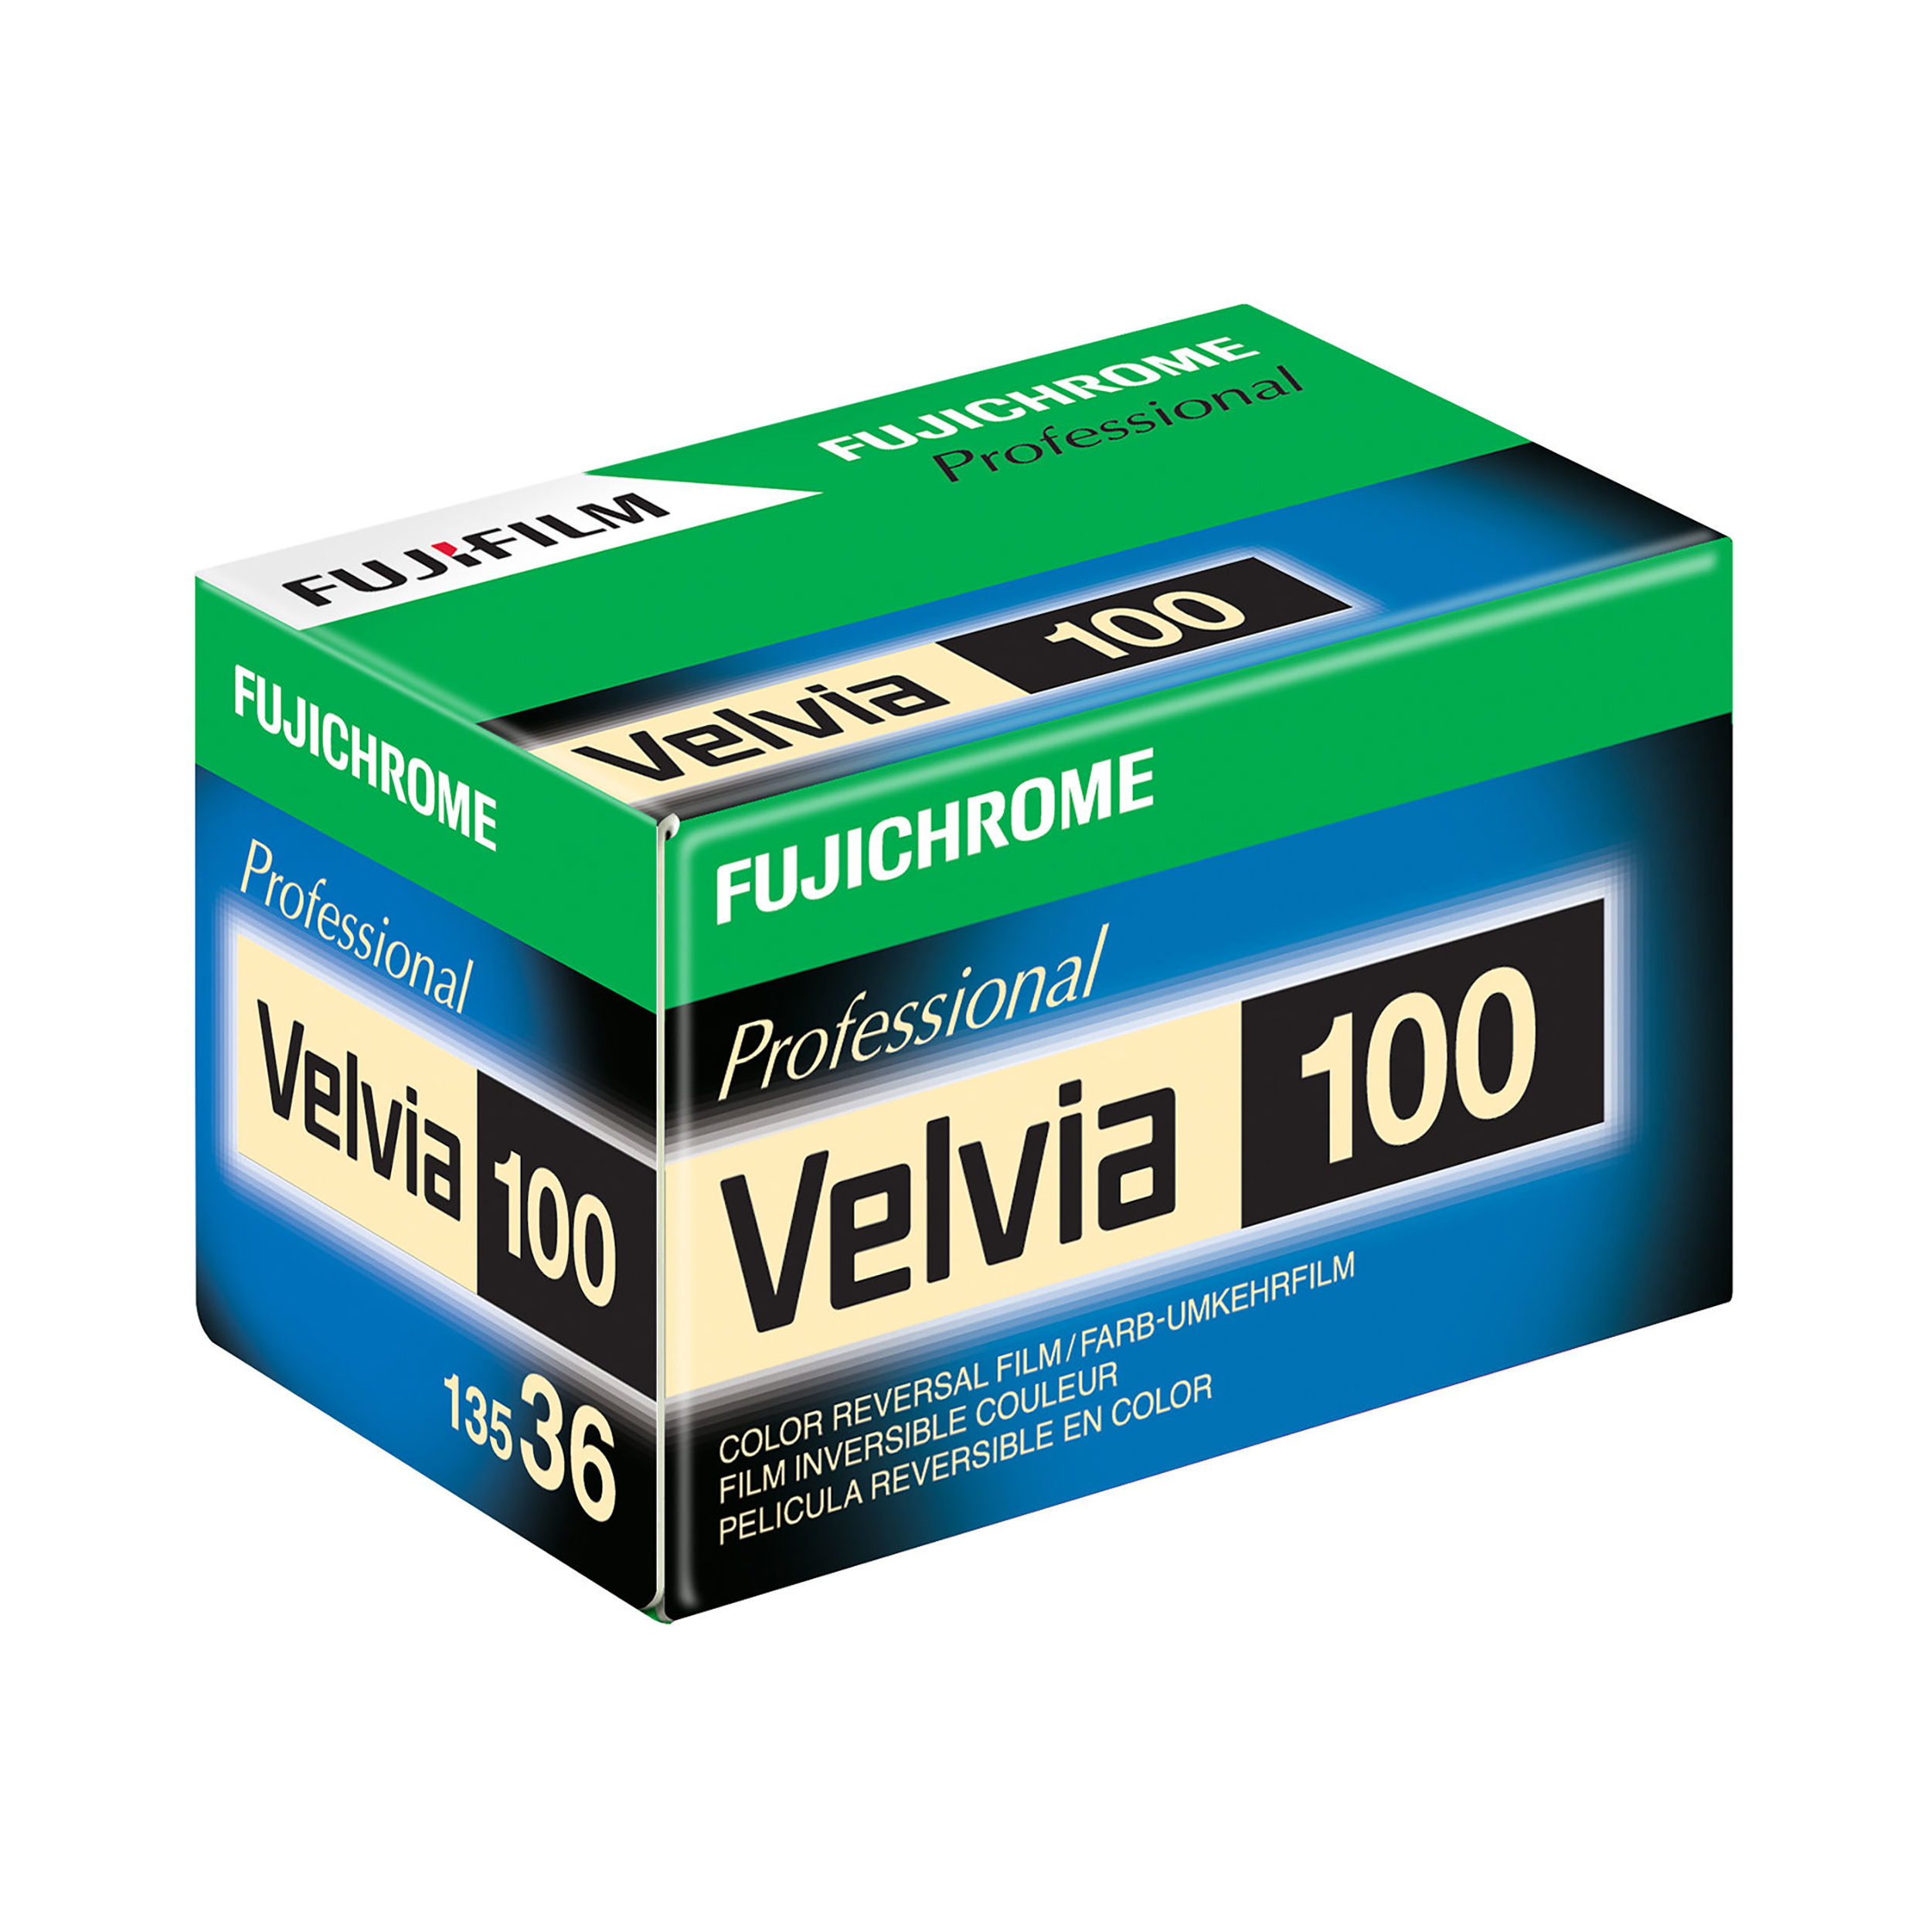 Fujifilm Fujichrome Velvia 100 Film de transparence de couleur professionnelle 100 RVP 100 - 35 mm, 36 Exp